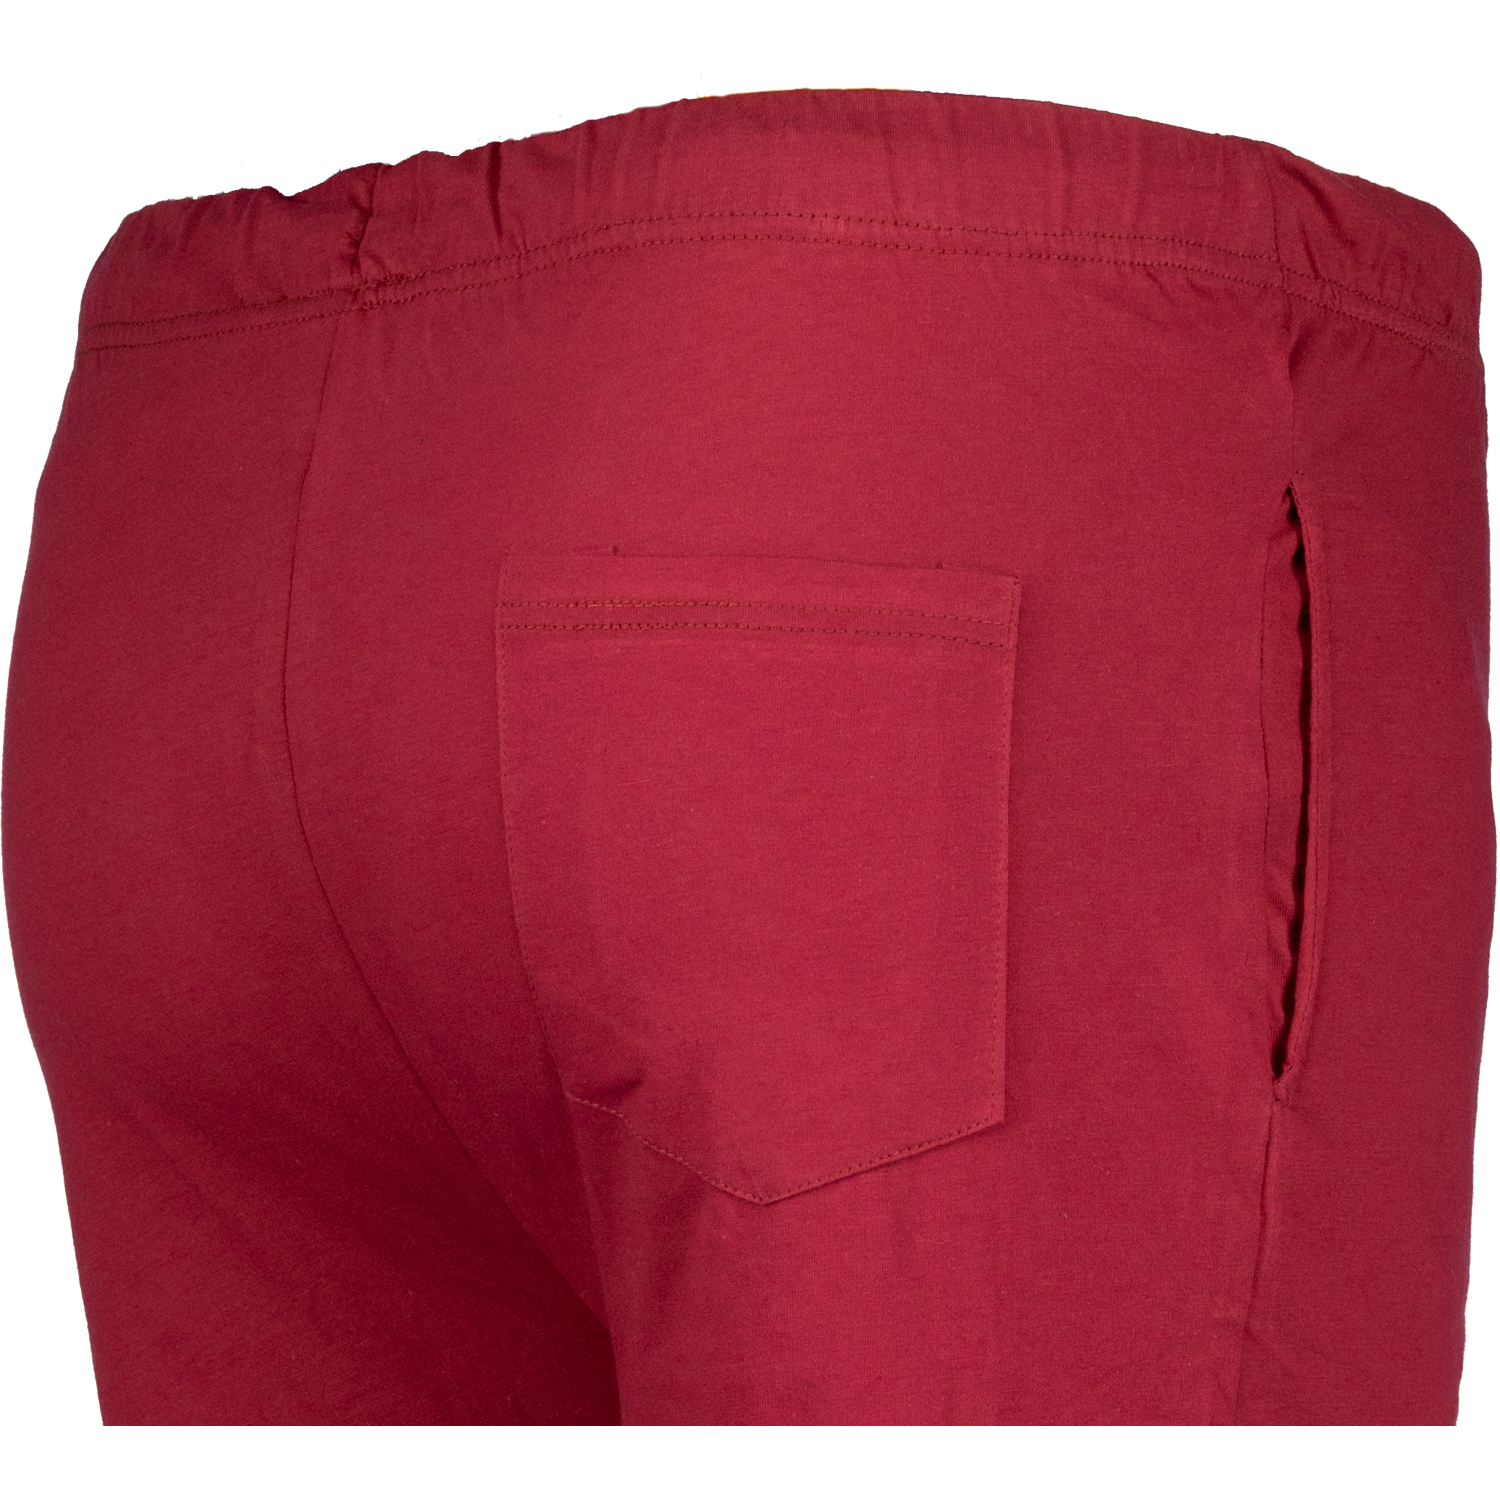 Short sleep pants for men by ADAMO series "Gerd" dark red in oversizes up to 10XL